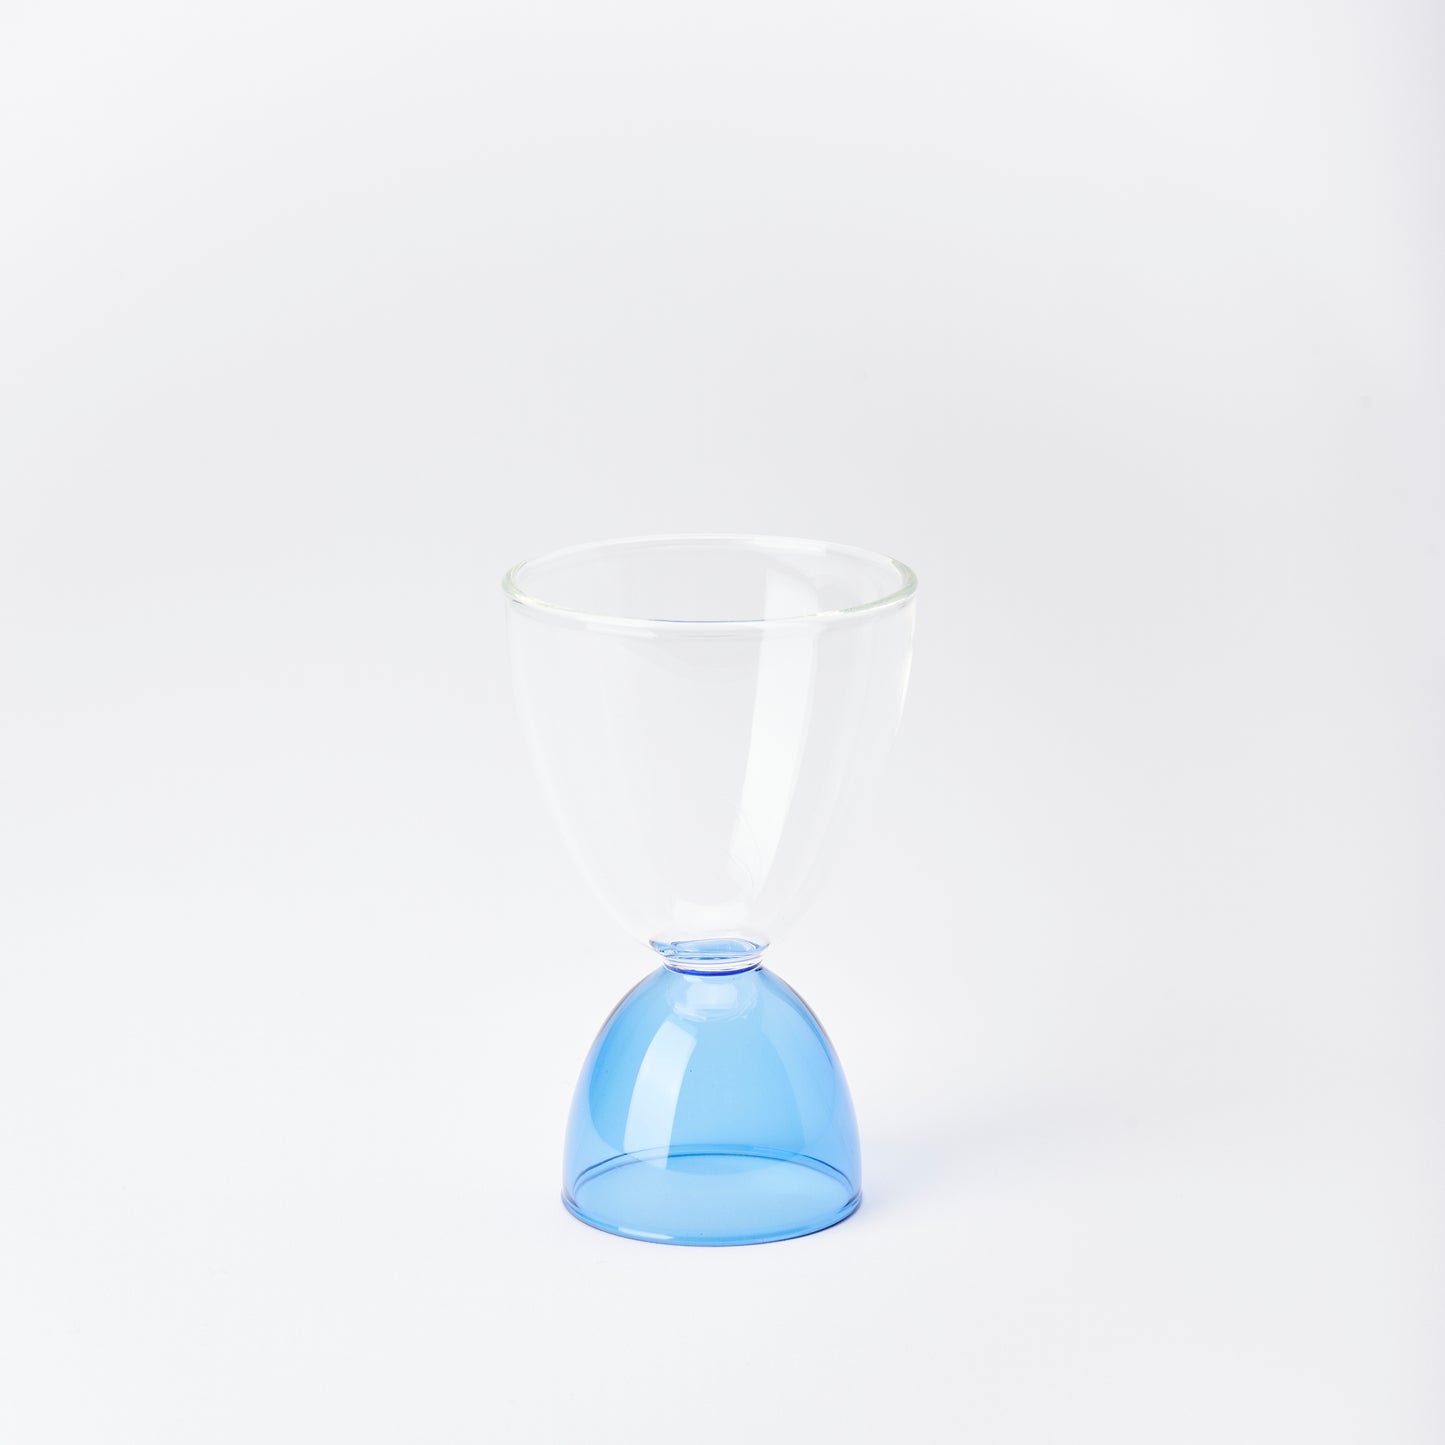 Mamo Glassware Classic Glass